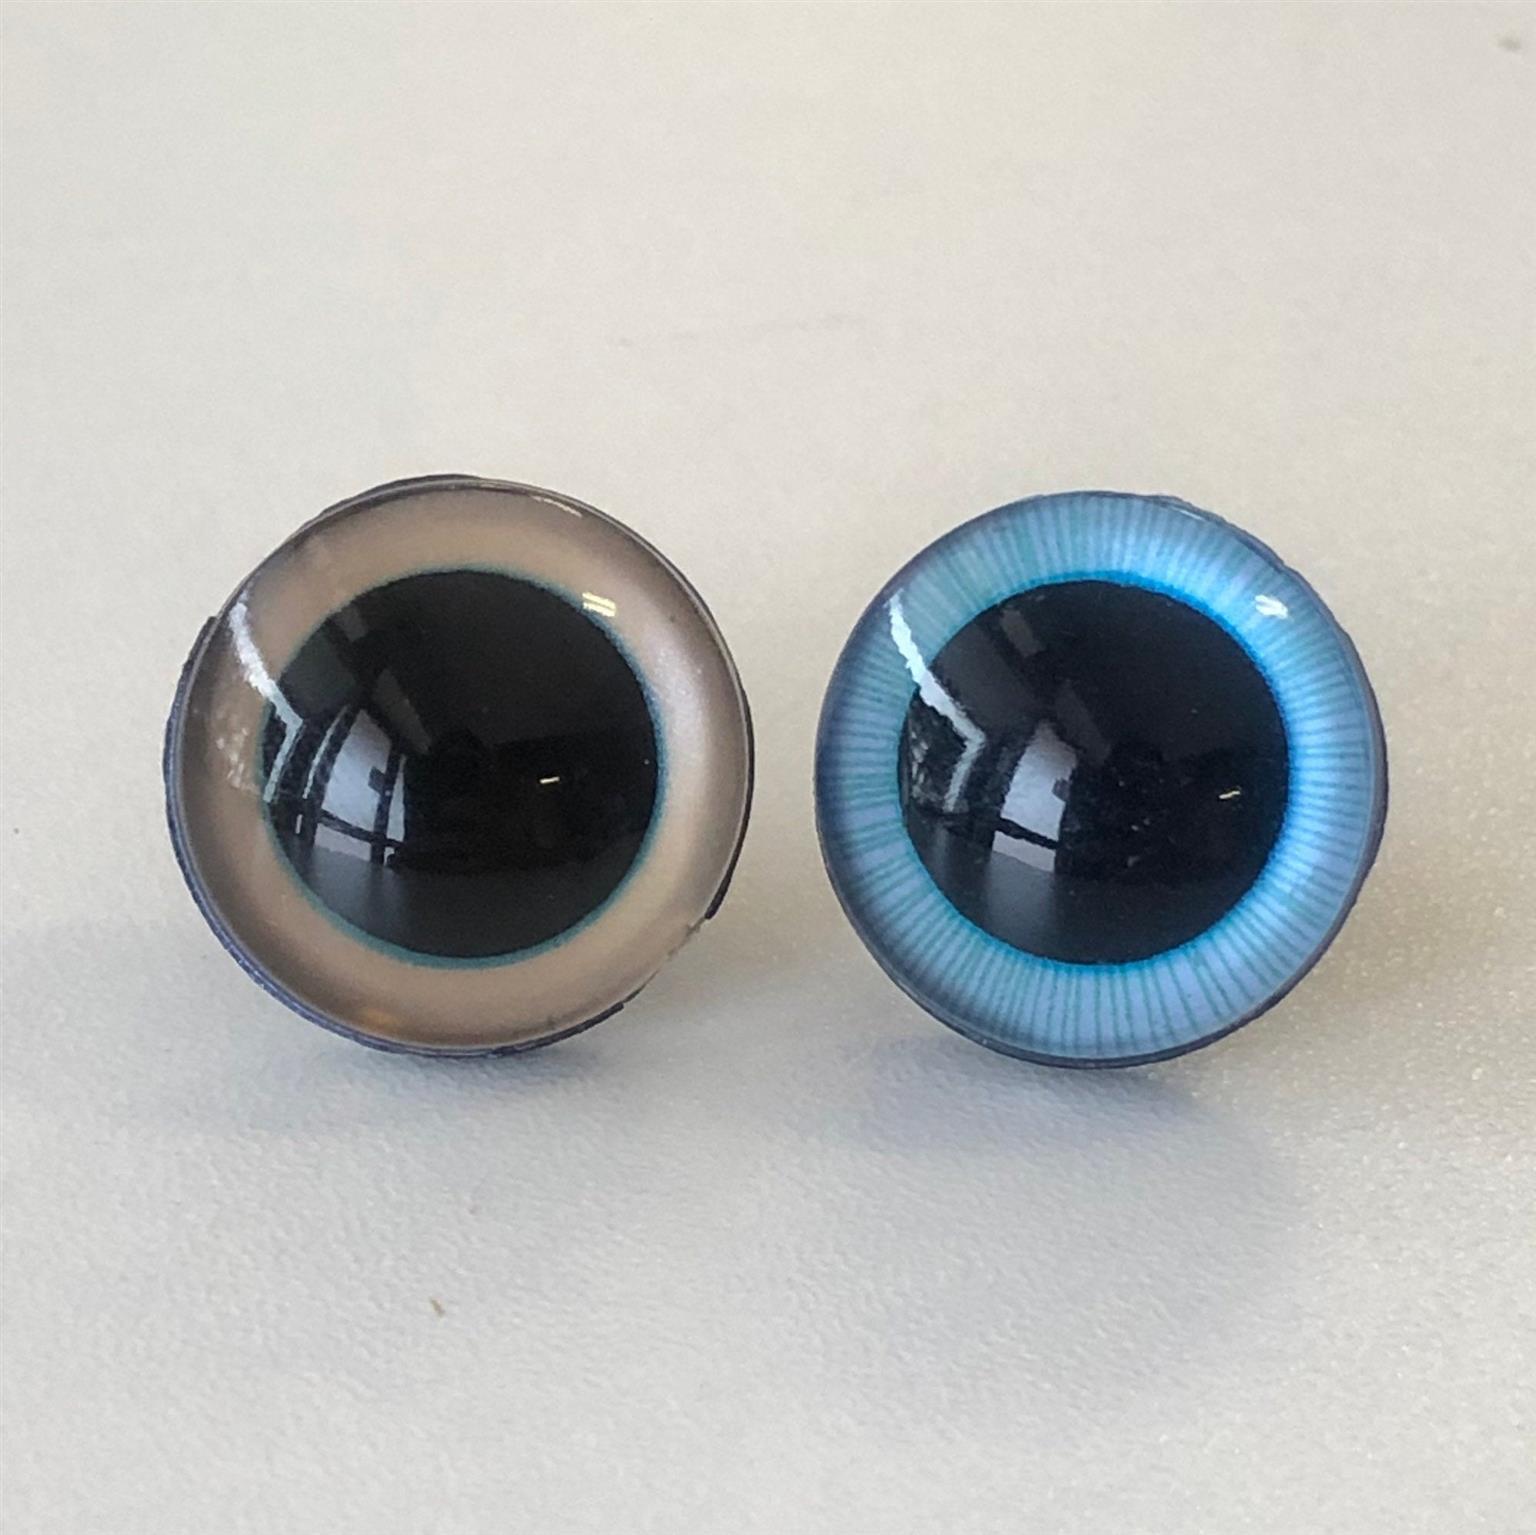 Sicherheitsaugen 20 mm blau, große Pupille, 1 Paar